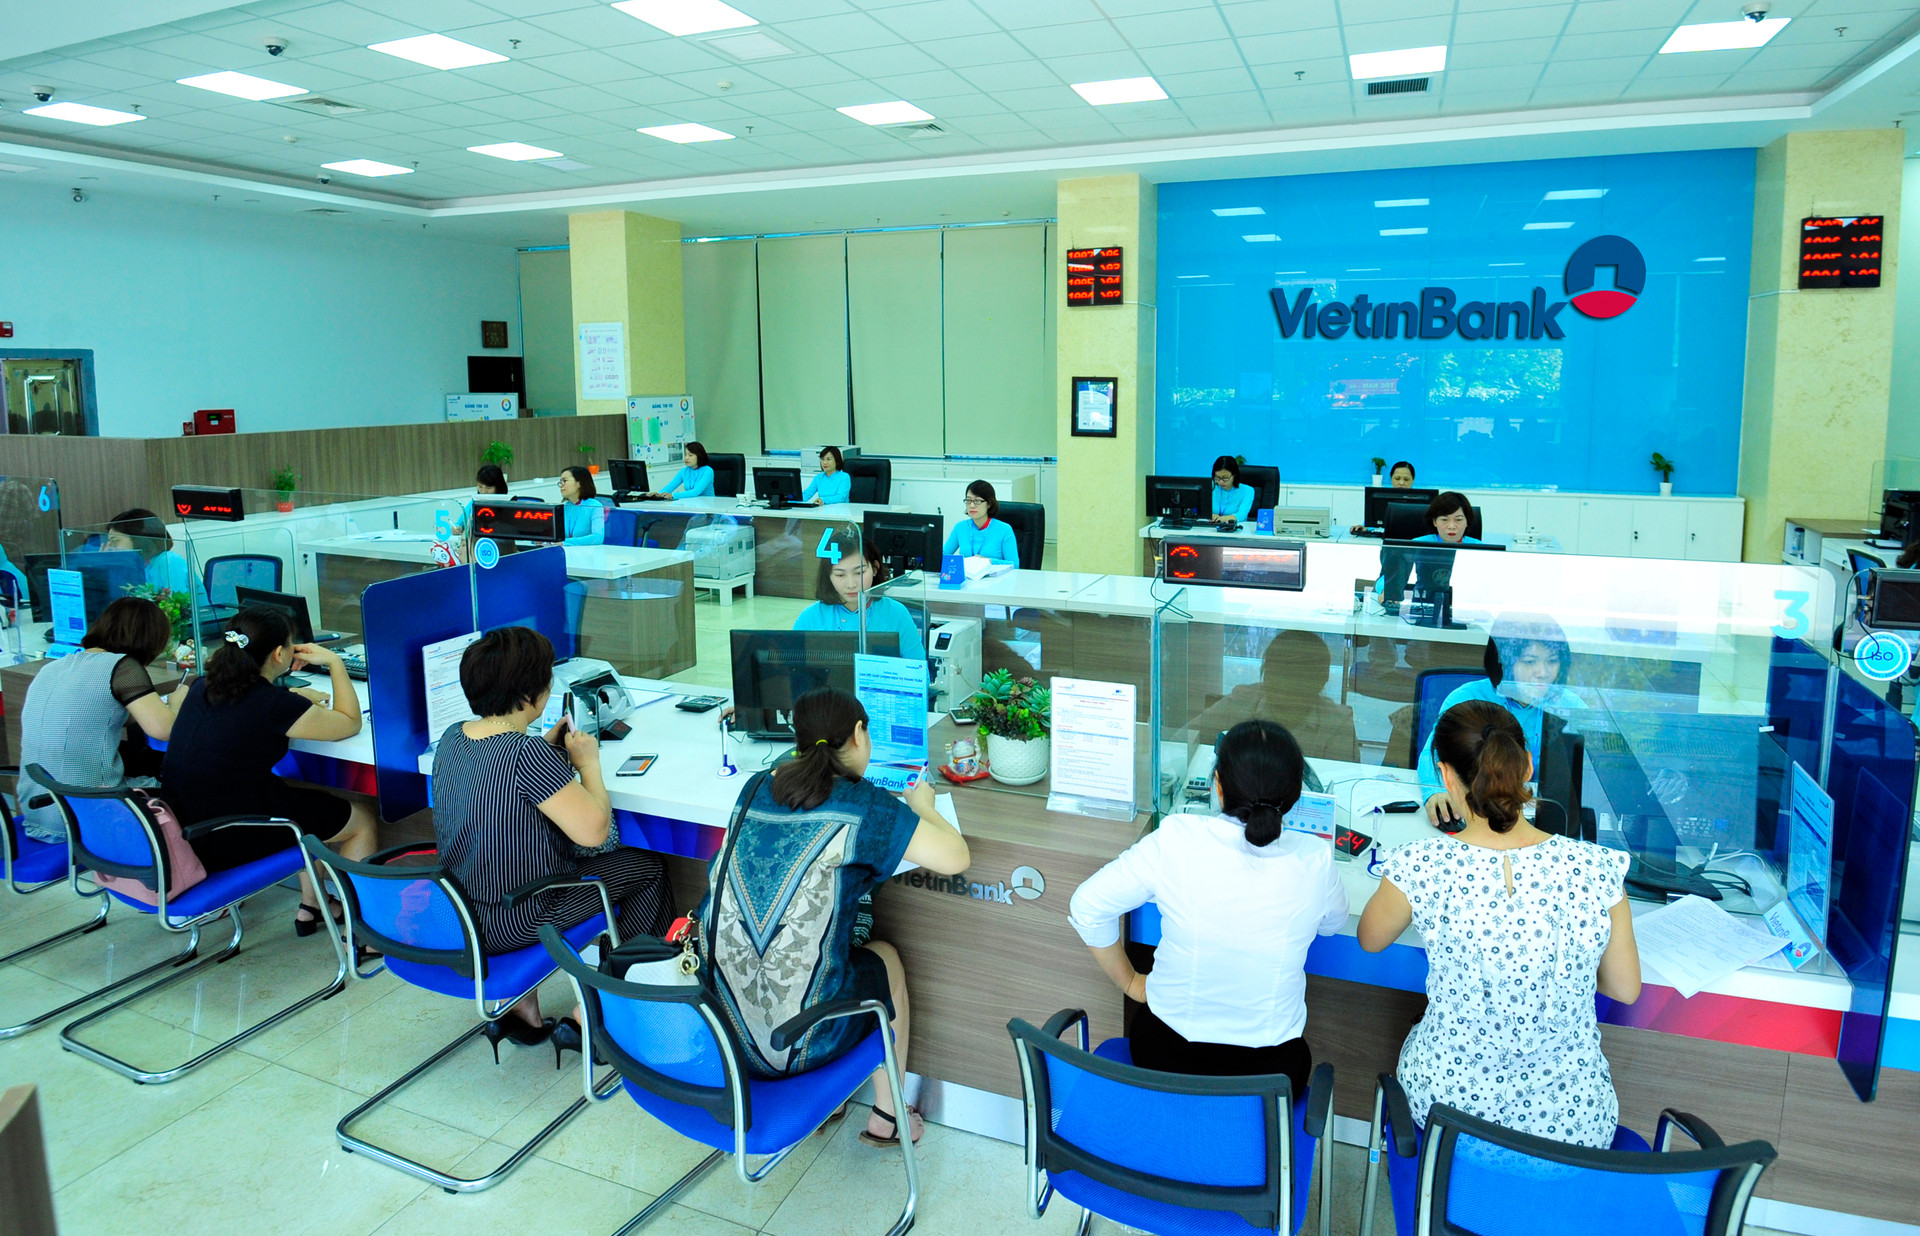 VietinBank tiên phong trong thanh toán trực tuyến trên Cổng Dịch vụ công Quốc gia